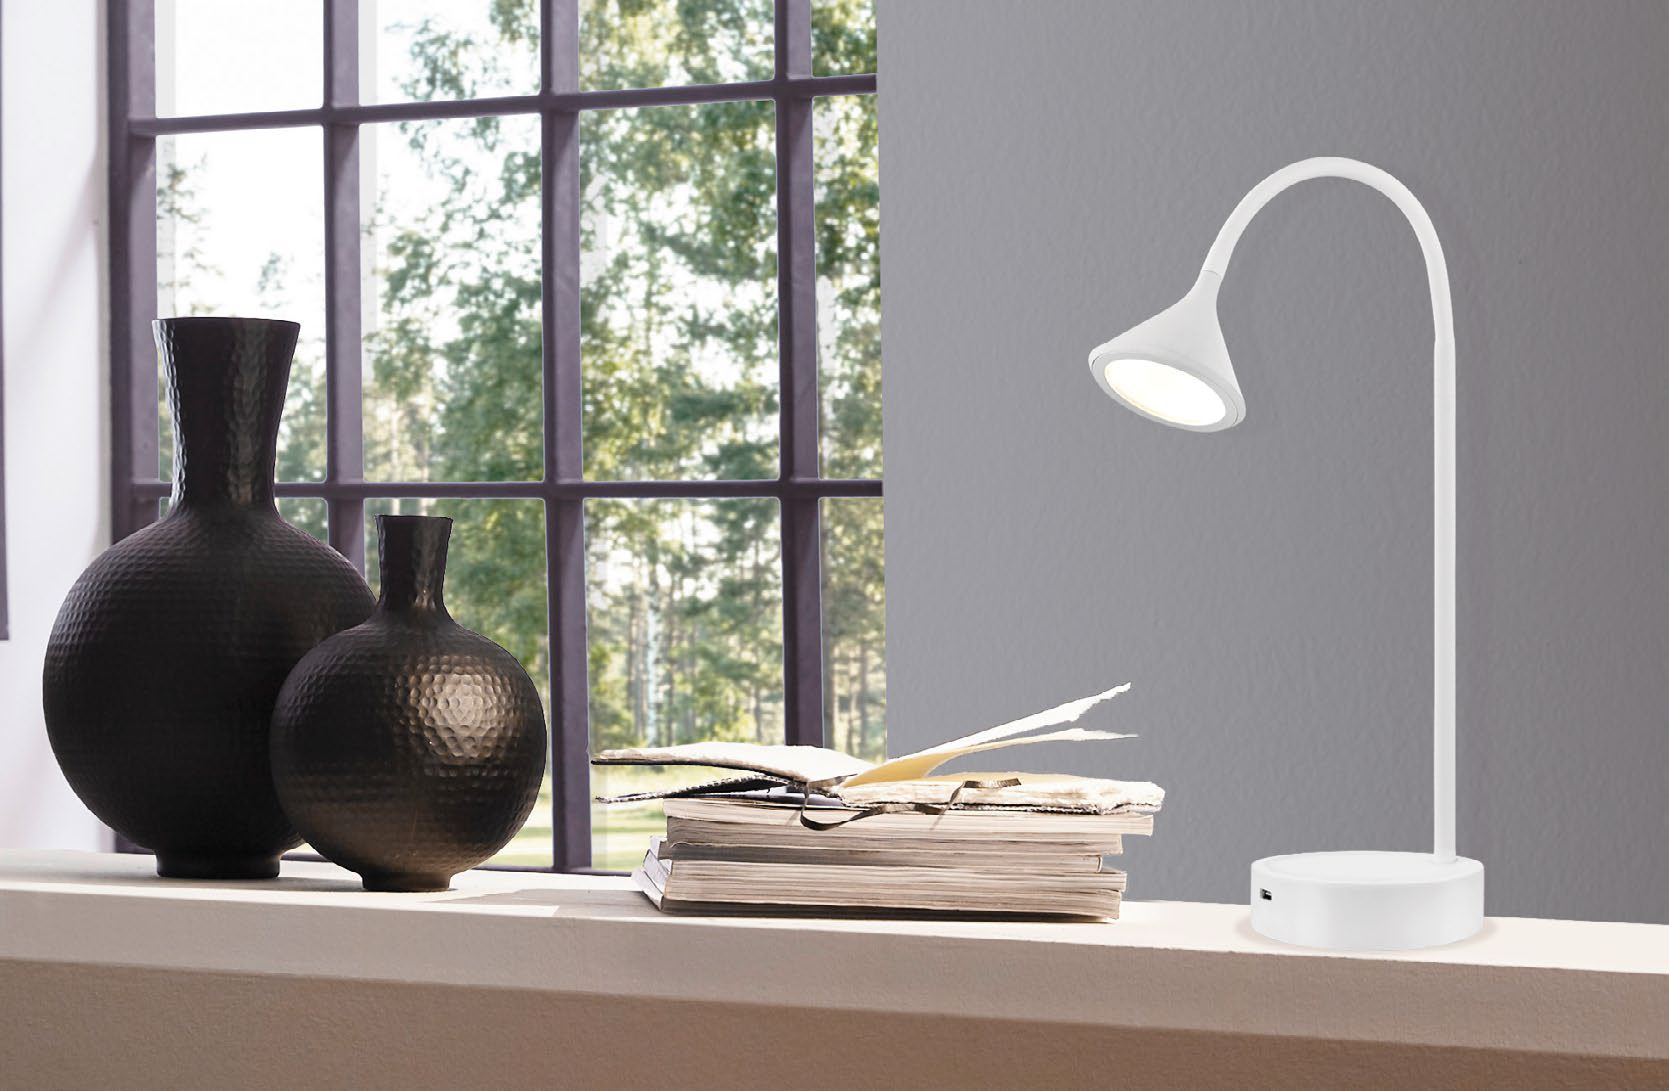 Lampe de table moderne ORMOND Eglo 202278A sur un bureau de travail près de la fenêtre avec objets décoratifs et livres